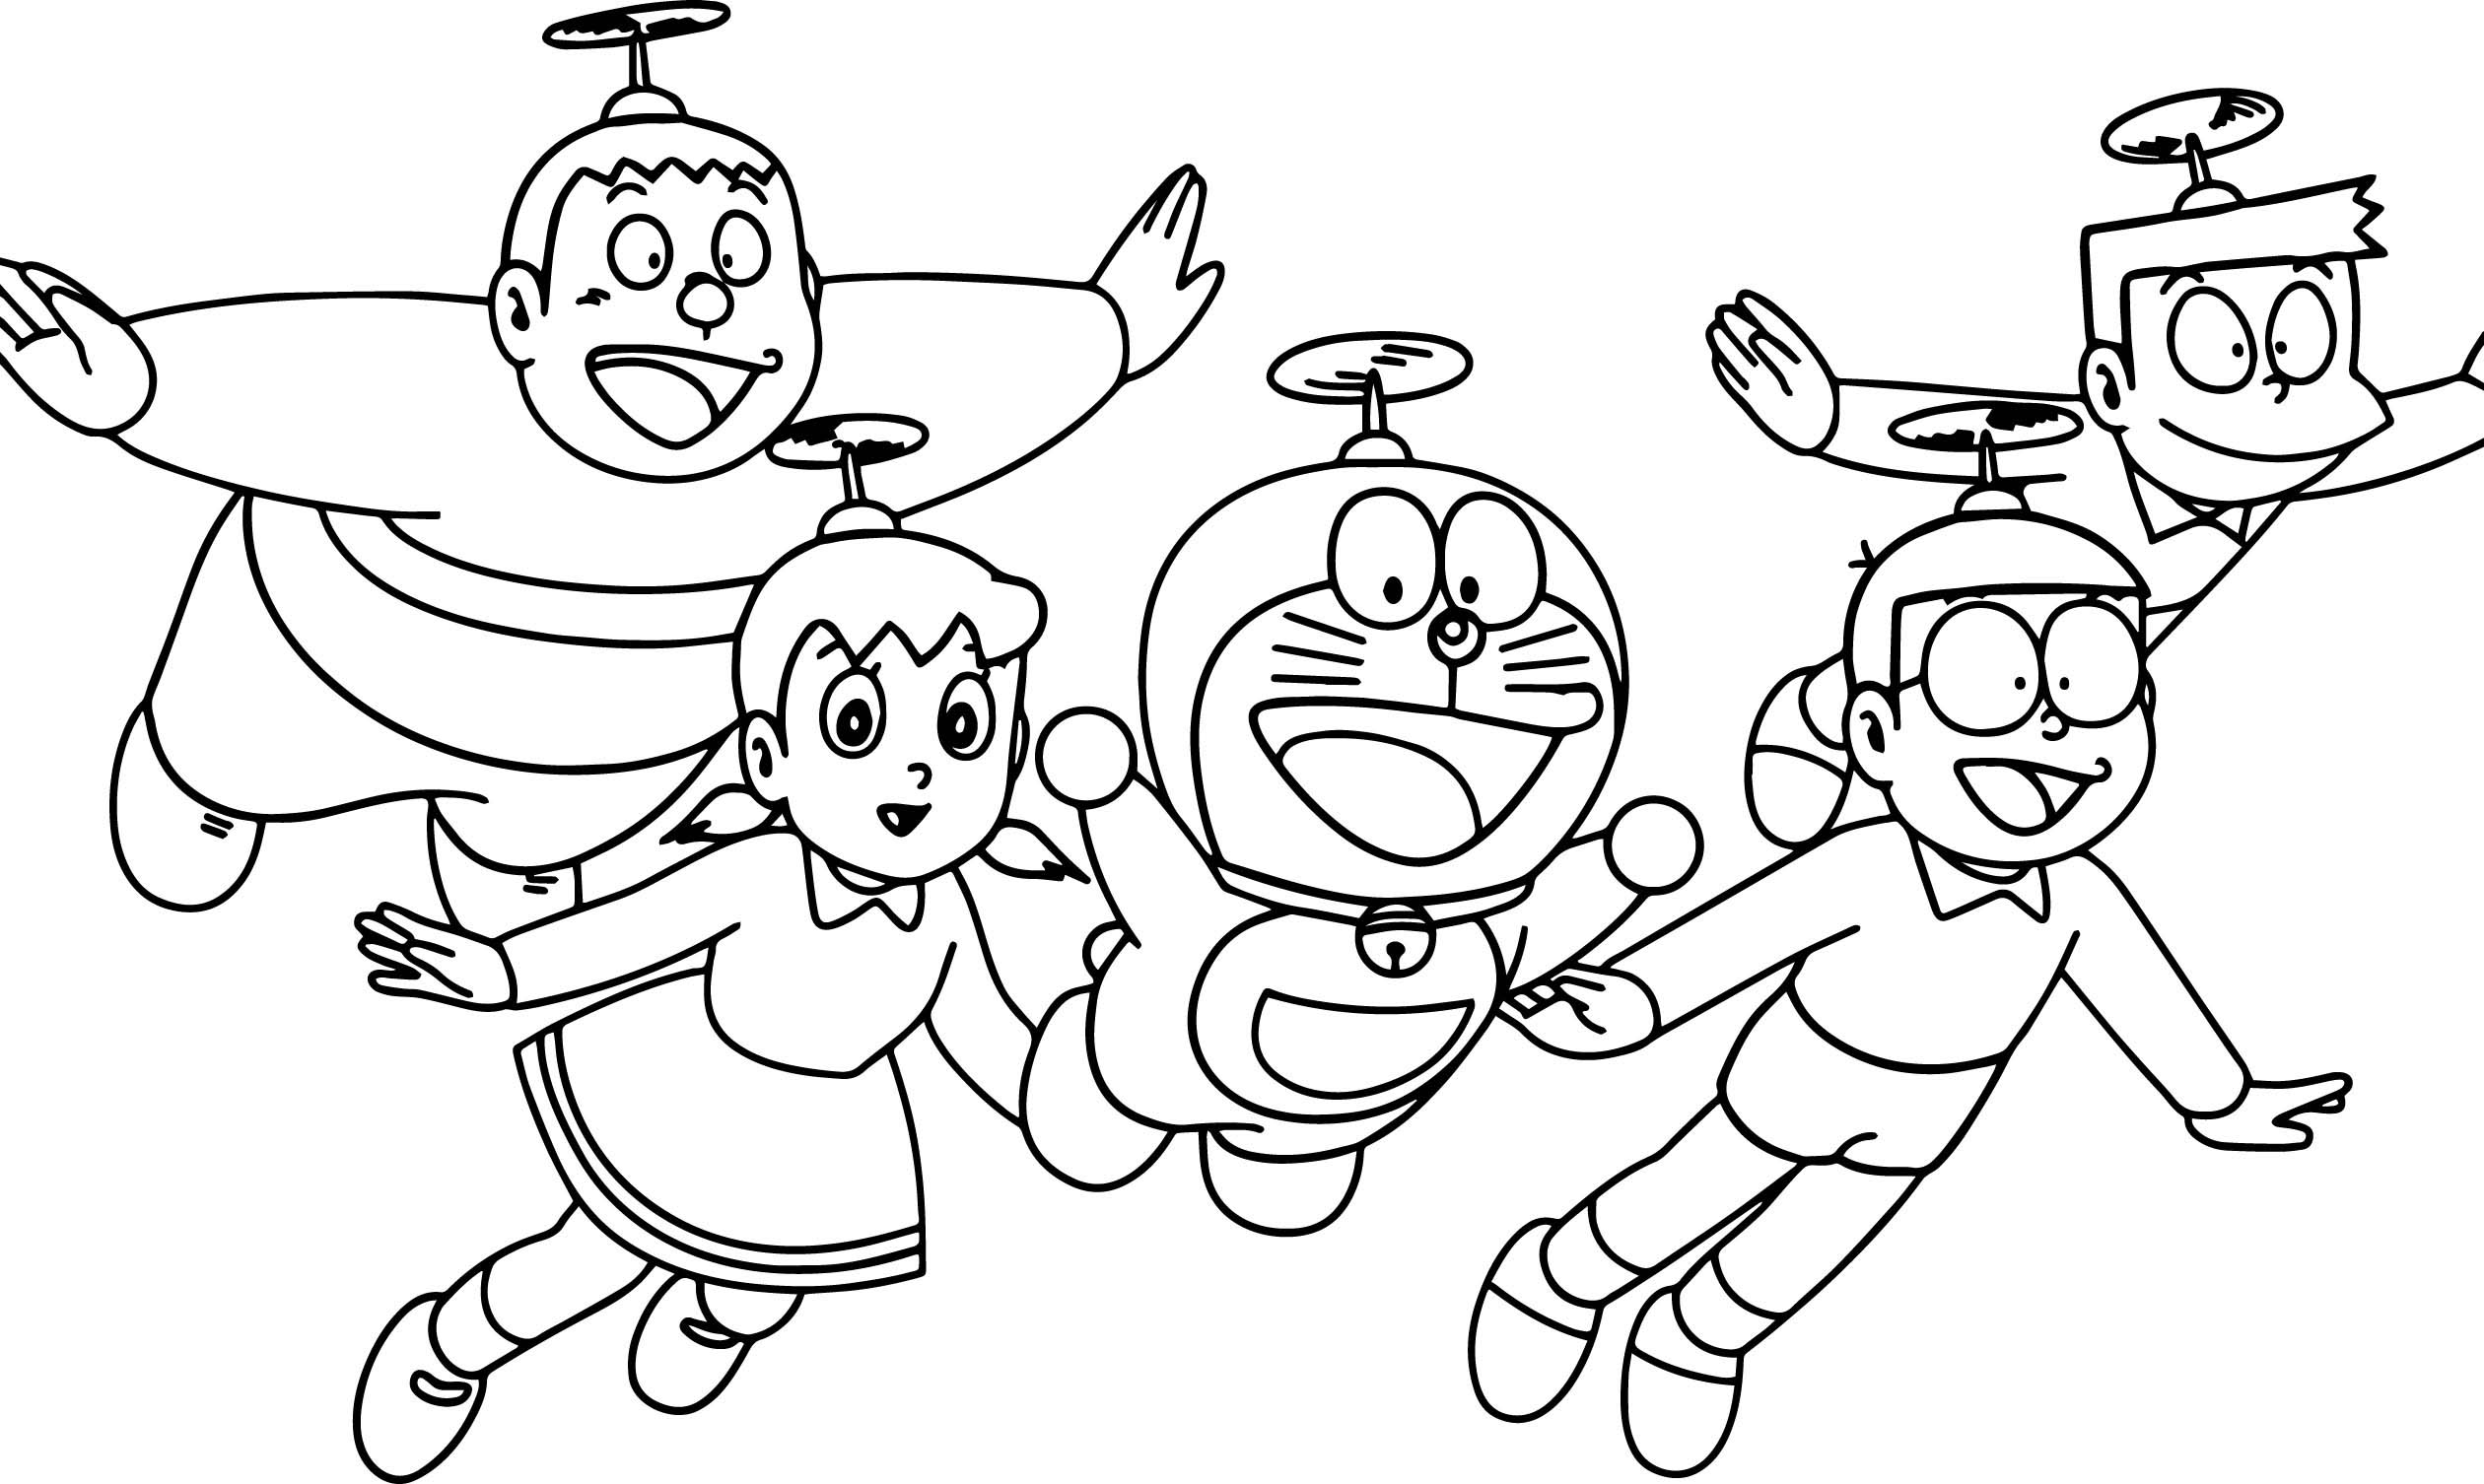 Tranh tô màu Nobita cùng những người bạn bay bằng cánh quạt tre